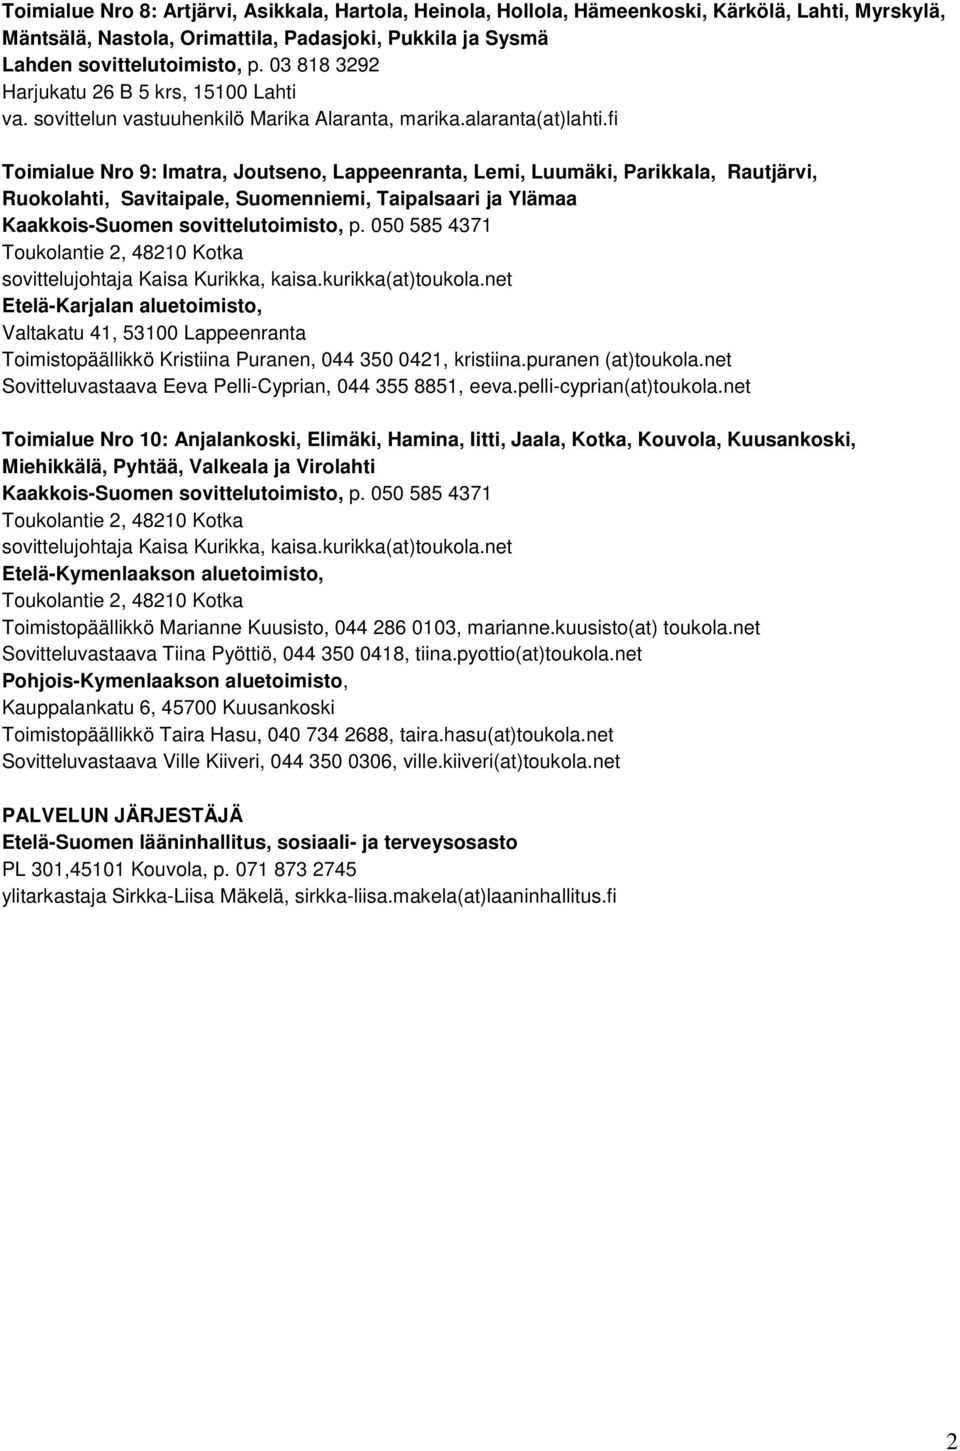 fi Toimialue Nro 9: Imatra, Joutseno, Lappeenranta, Lemi, Luumäki, Parikkala, Rautjärvi, Ruokolahti, Savitaipale, Suomenniemi, Taipalsaari ja Ylämaa Kaakkois-Suomen sovittelutoimisto, p.